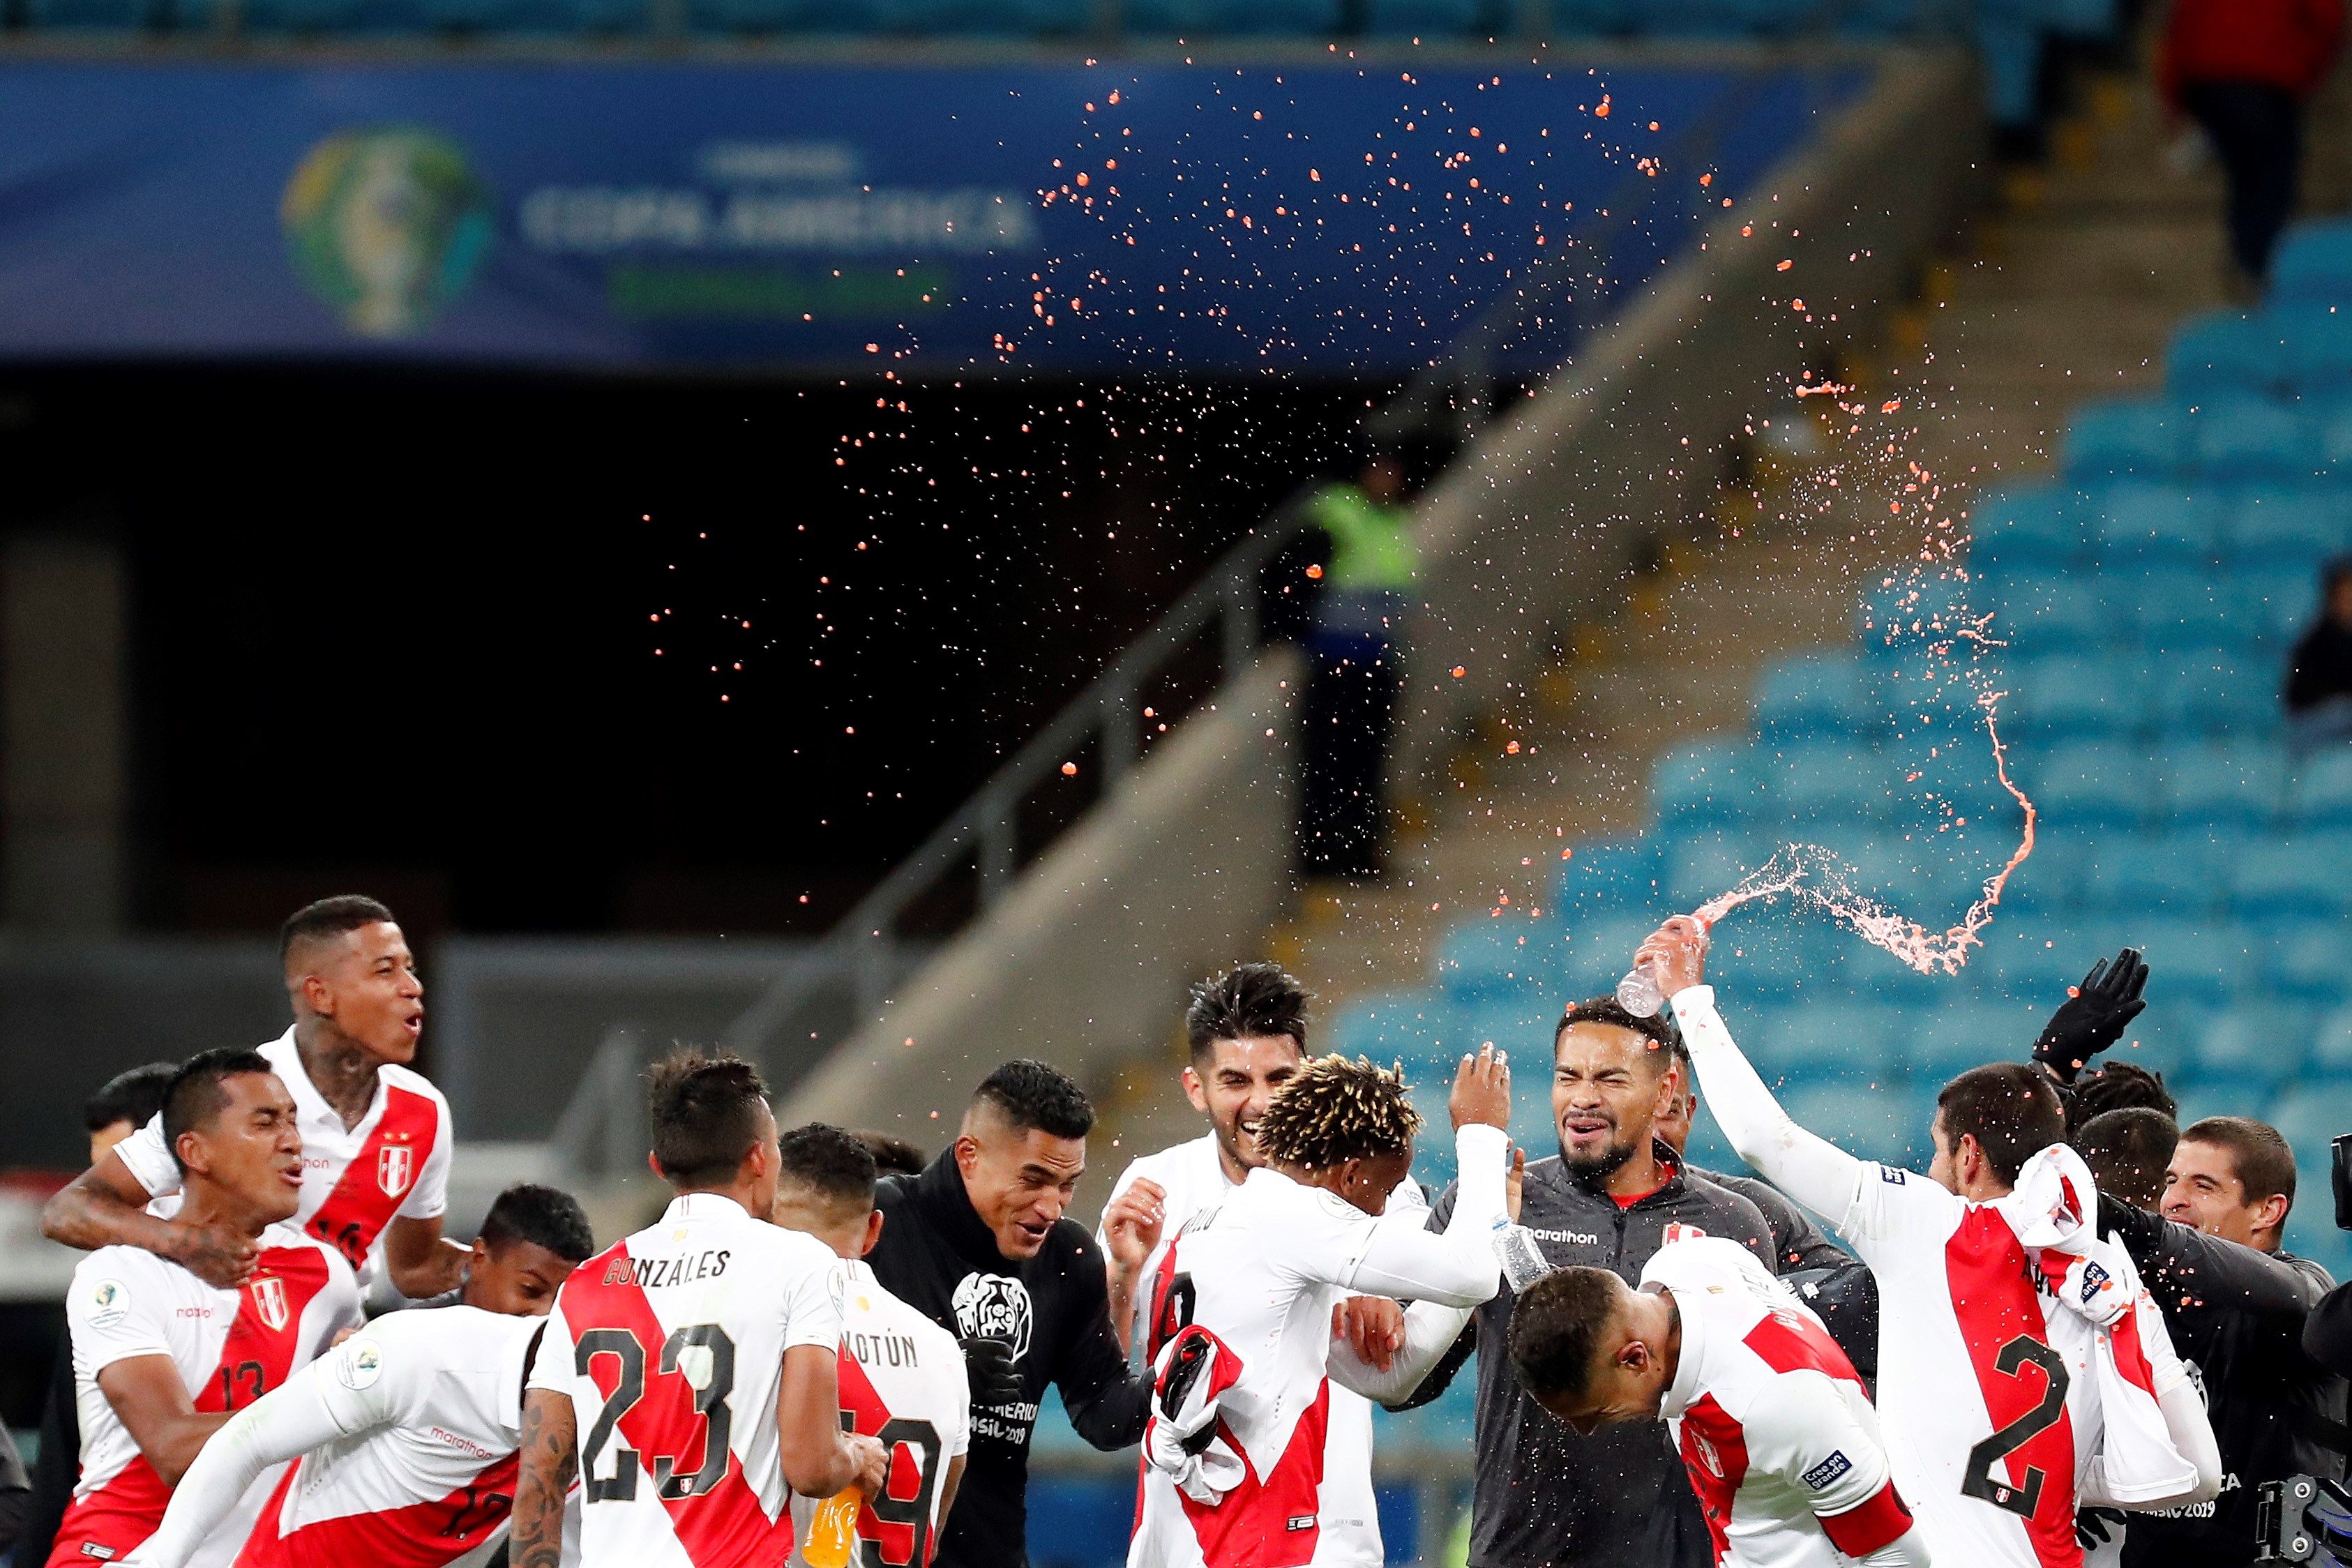 Jugadores de Perú celebran tras vencer a Chile, durante el partido Chile-Perú de semifinales de la Copa América de Fútbol 2019, en el Estadio Arena do Grêmio de Porto Alegre, Brasil, hoy 3 de julio de 2019. (Foto Prensa Libre: EFE)